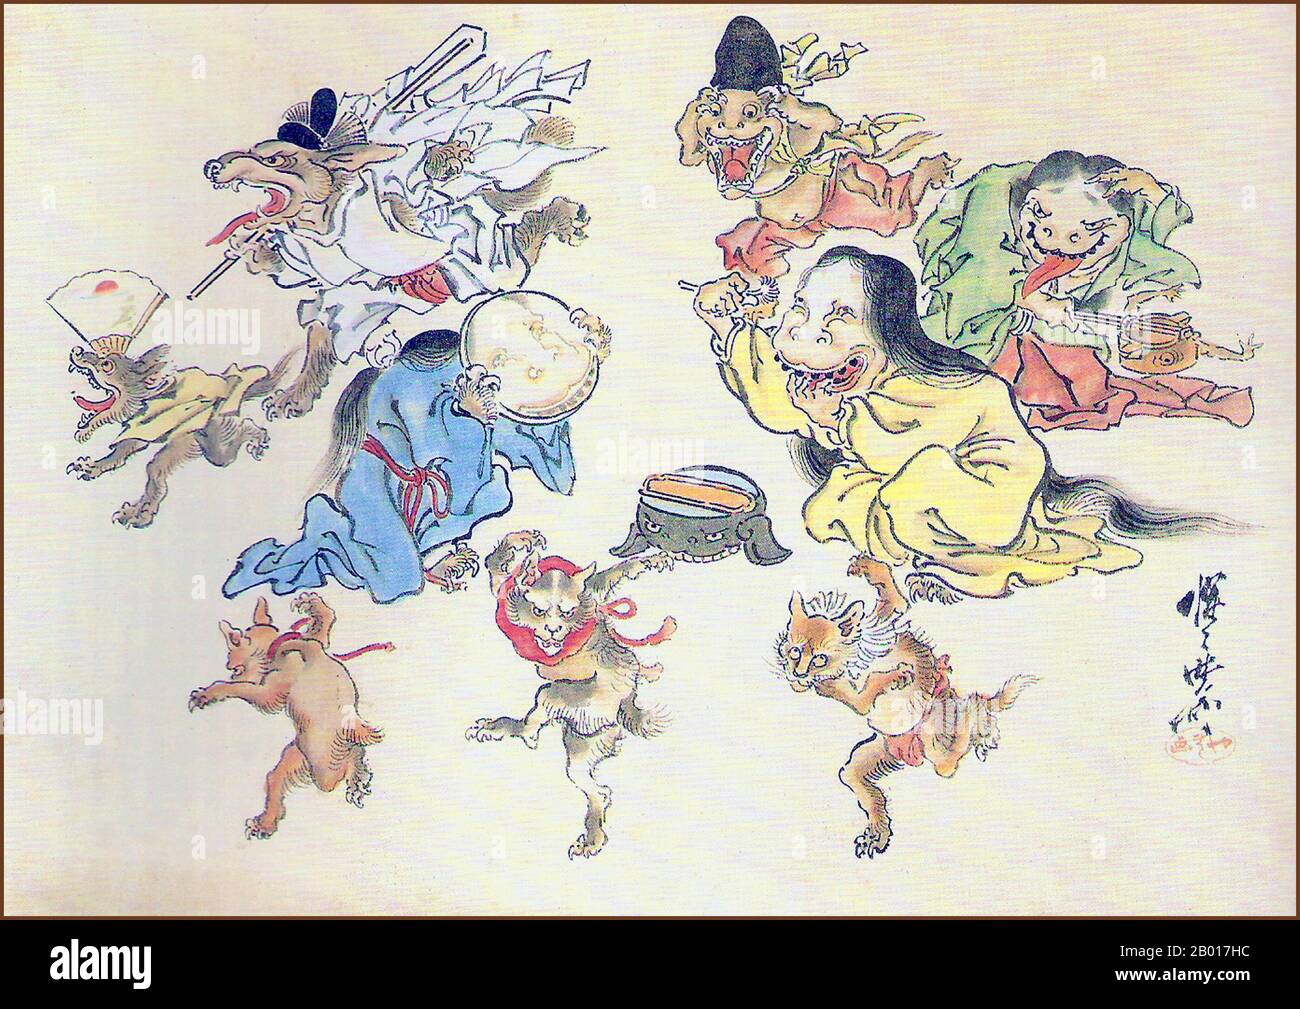 Giappone: 'Hyakki Yako (sfilata notturna di cento demoni)'. Particolare della pittura a grauola di Kawanabe Kyosai (18 maggio 1831 - 26 aprile 1889), 19th secolo. Hyakki Yagyo/Hyakki Yako ('Night Parade of One Hundred Demons') è una credenza popolare giapponese. La convinzione sostiene che ogni anno yokai, esseri soprannaturali giapponesi, si porterà in strada durante le notti estive. La processione è talvolta ordinata, mentre altre volte è una sommossa. Chiunque venga attraverso la processione morirà, a meno che non sia protetto da qualche sutra buddista. E' un tema popolare nell'arte visiva giapponese Foto Stock